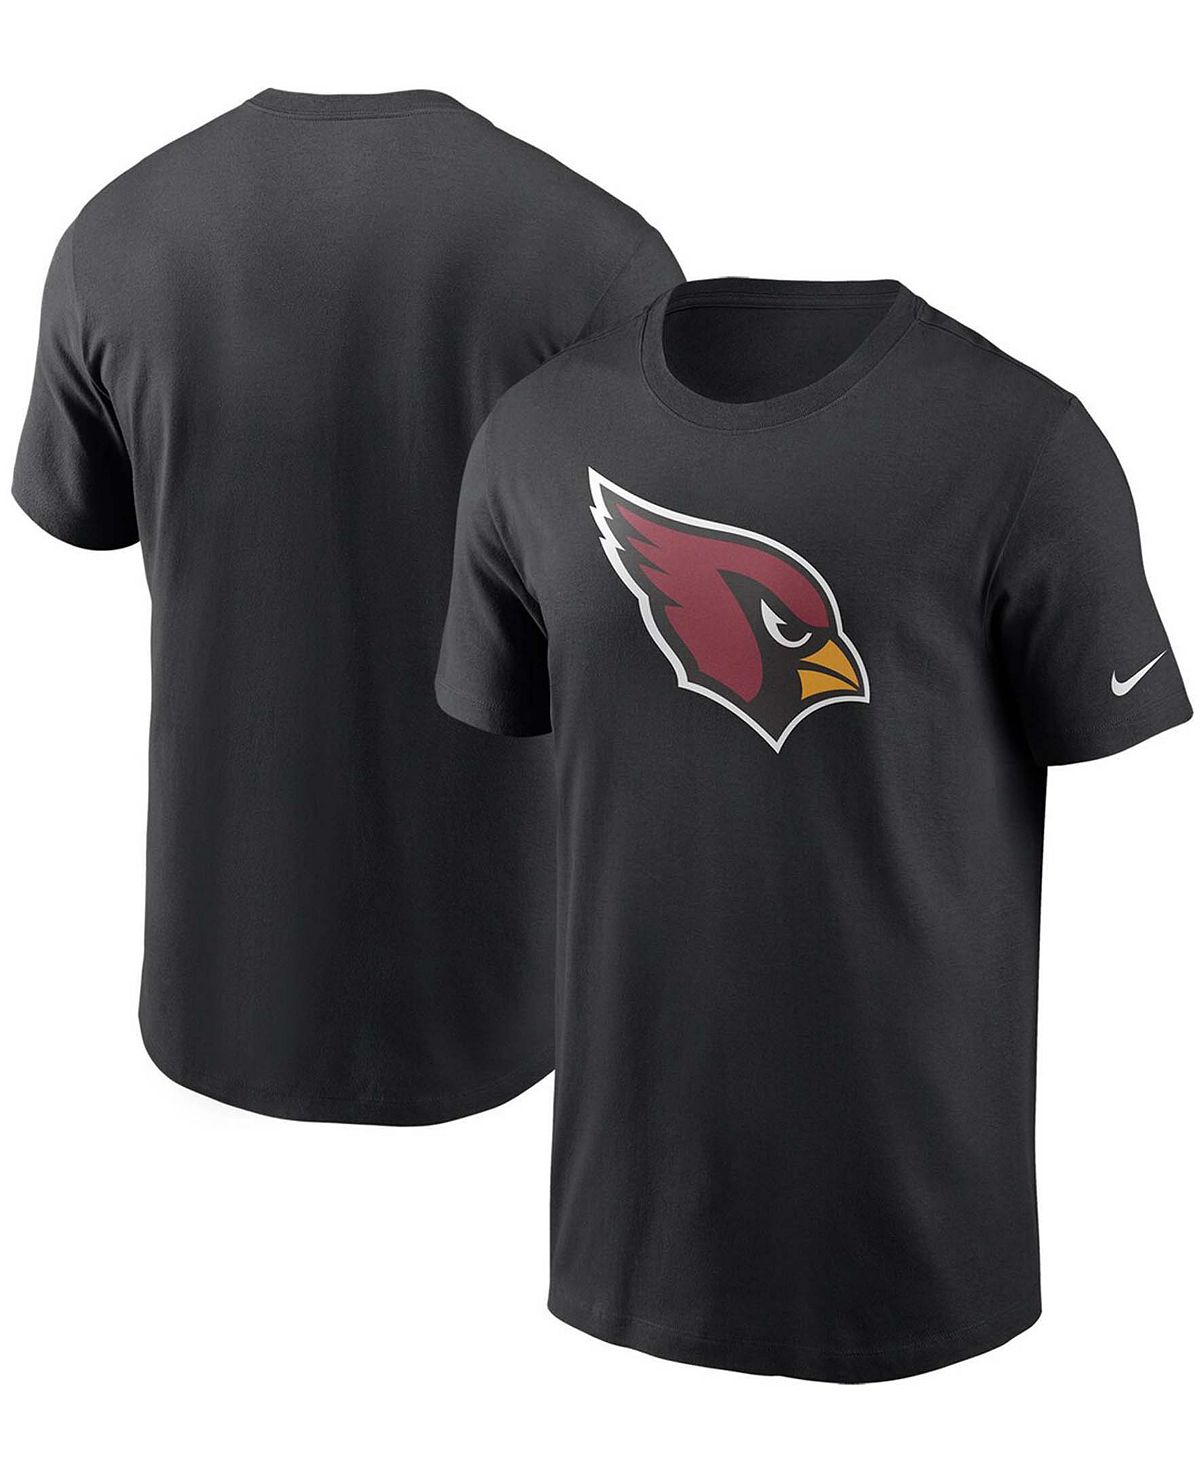 Мужская черная футболка с логотипом Arizona Cardinals Primary Nike